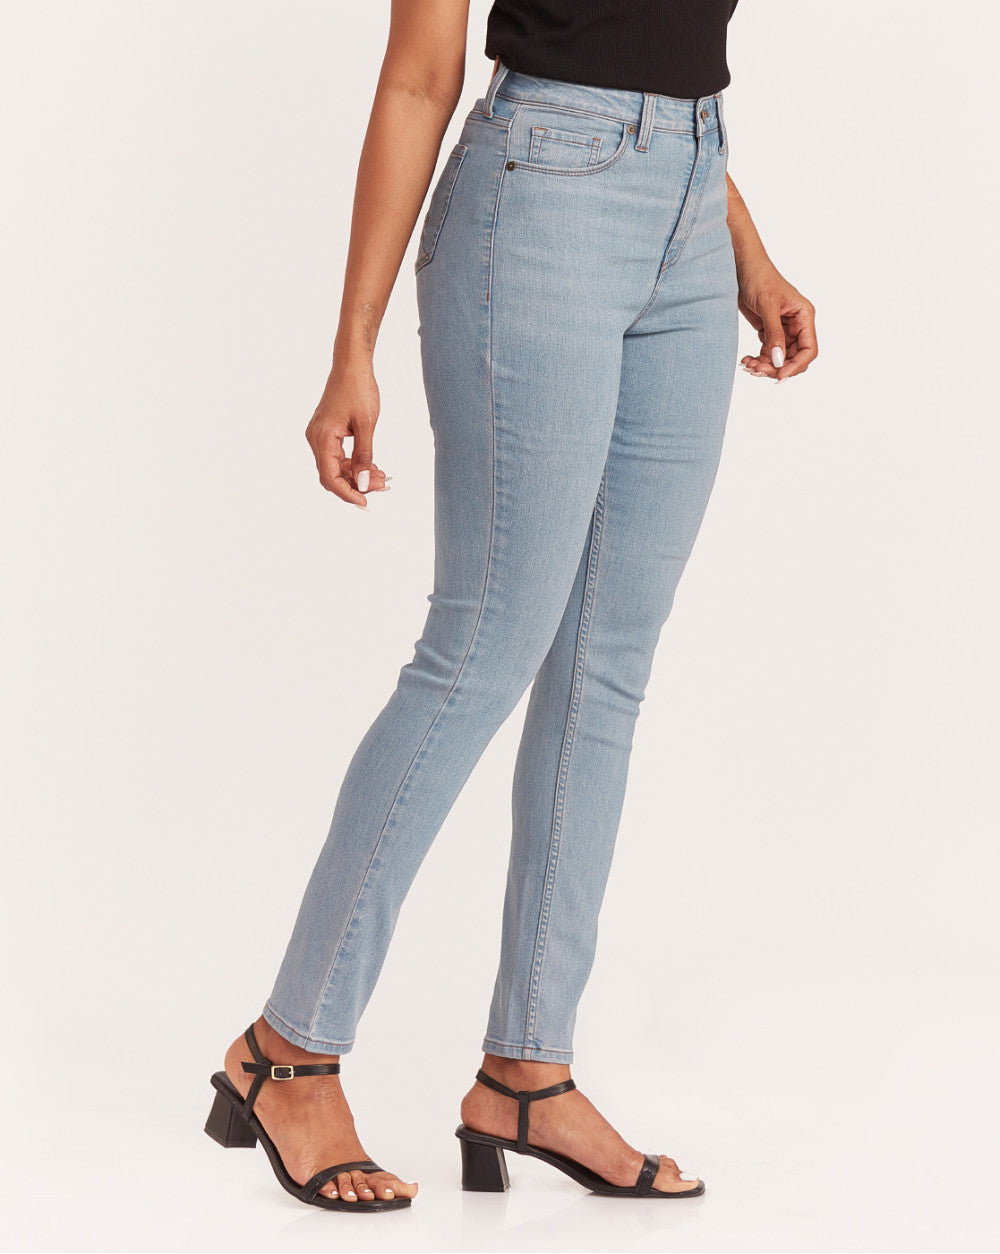 Skinny Fit Waist Jeans - Vapour Blue